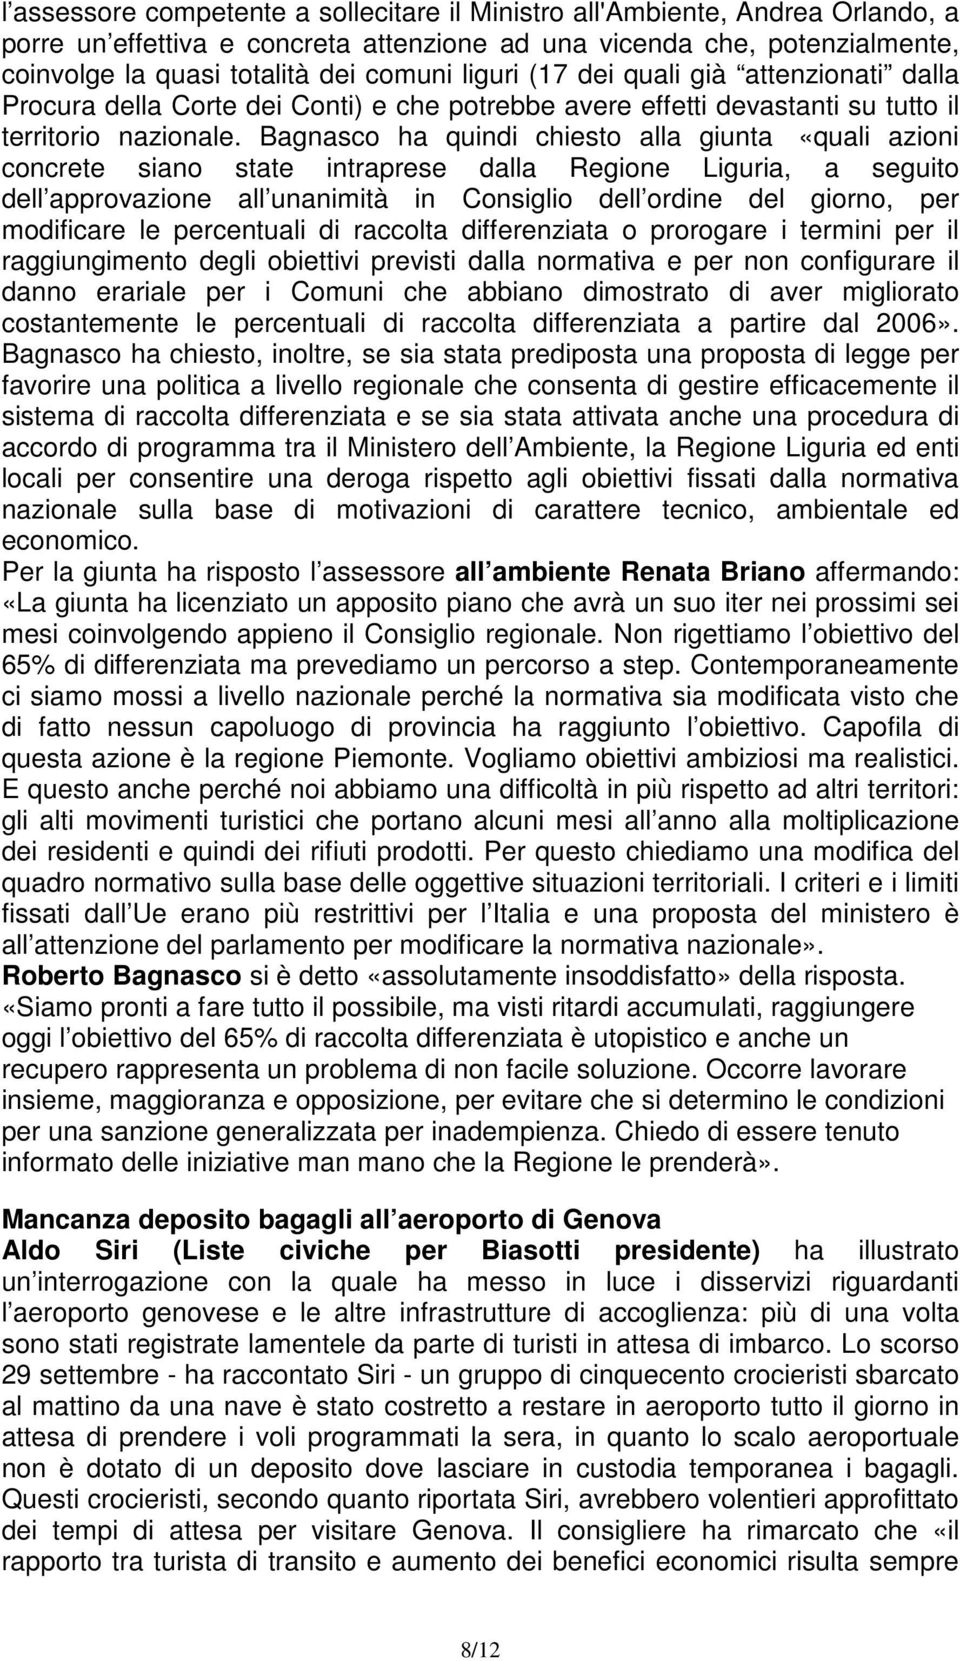 Bagnasco ha quindi chiesto alla giunta «quali azioni concrete siano state intraprese dalla Regione Liguria, a seguito dell approvazione all unanimità in Consiglio dell ordine del giorno, per